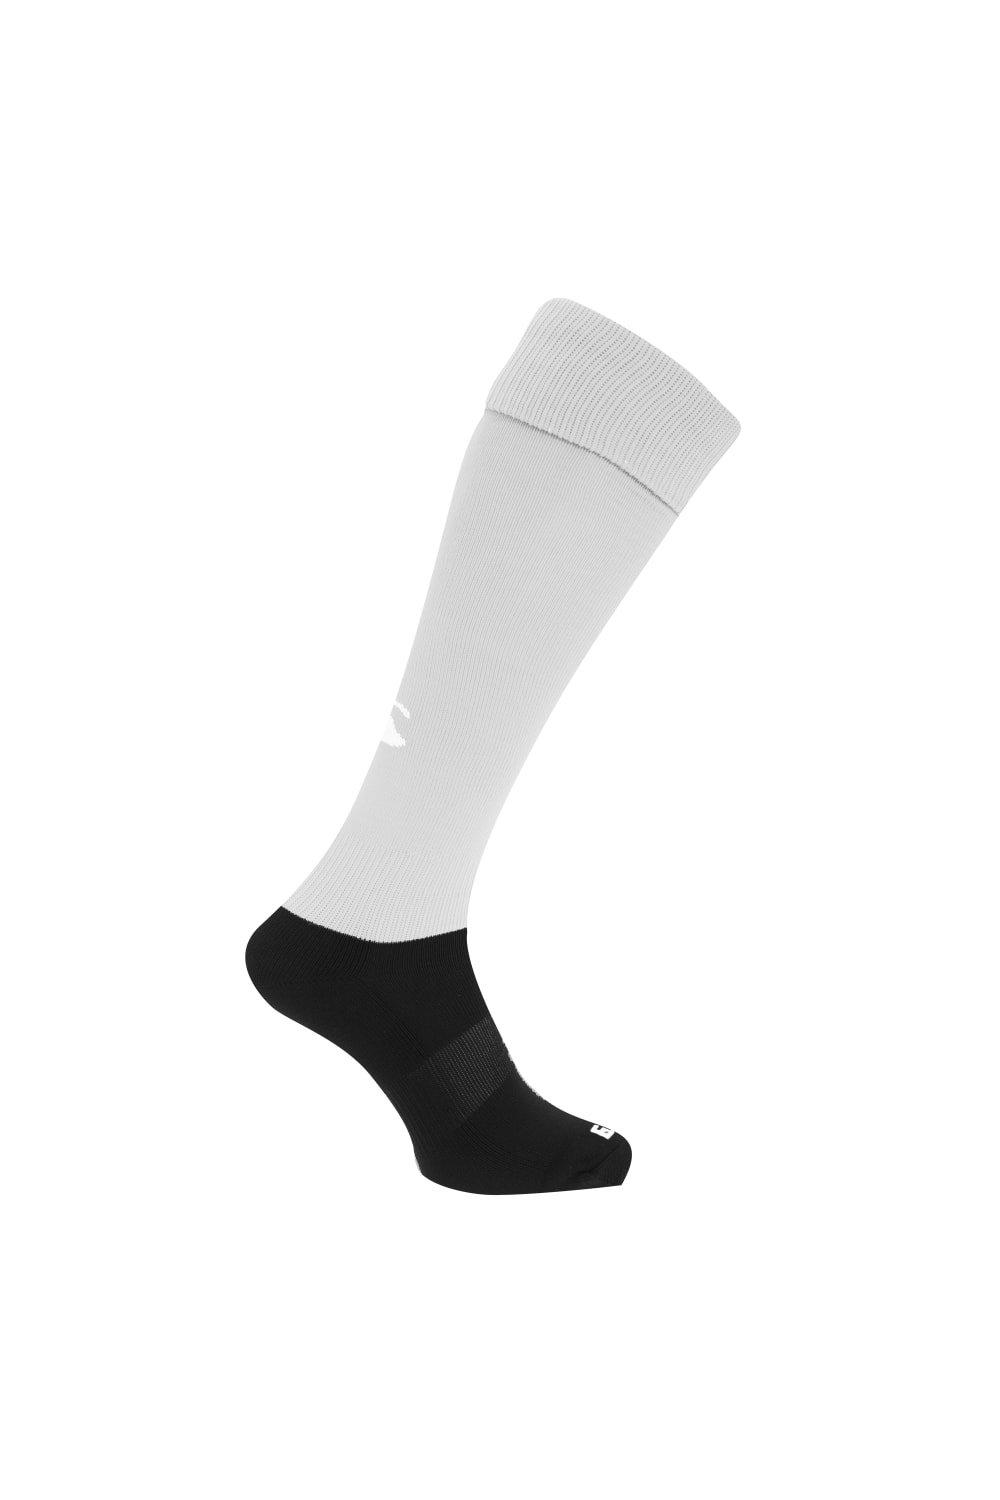 Спортивные носки для игры в регби Canterbury, белый спортивные брюки overcome с контрастными деталями